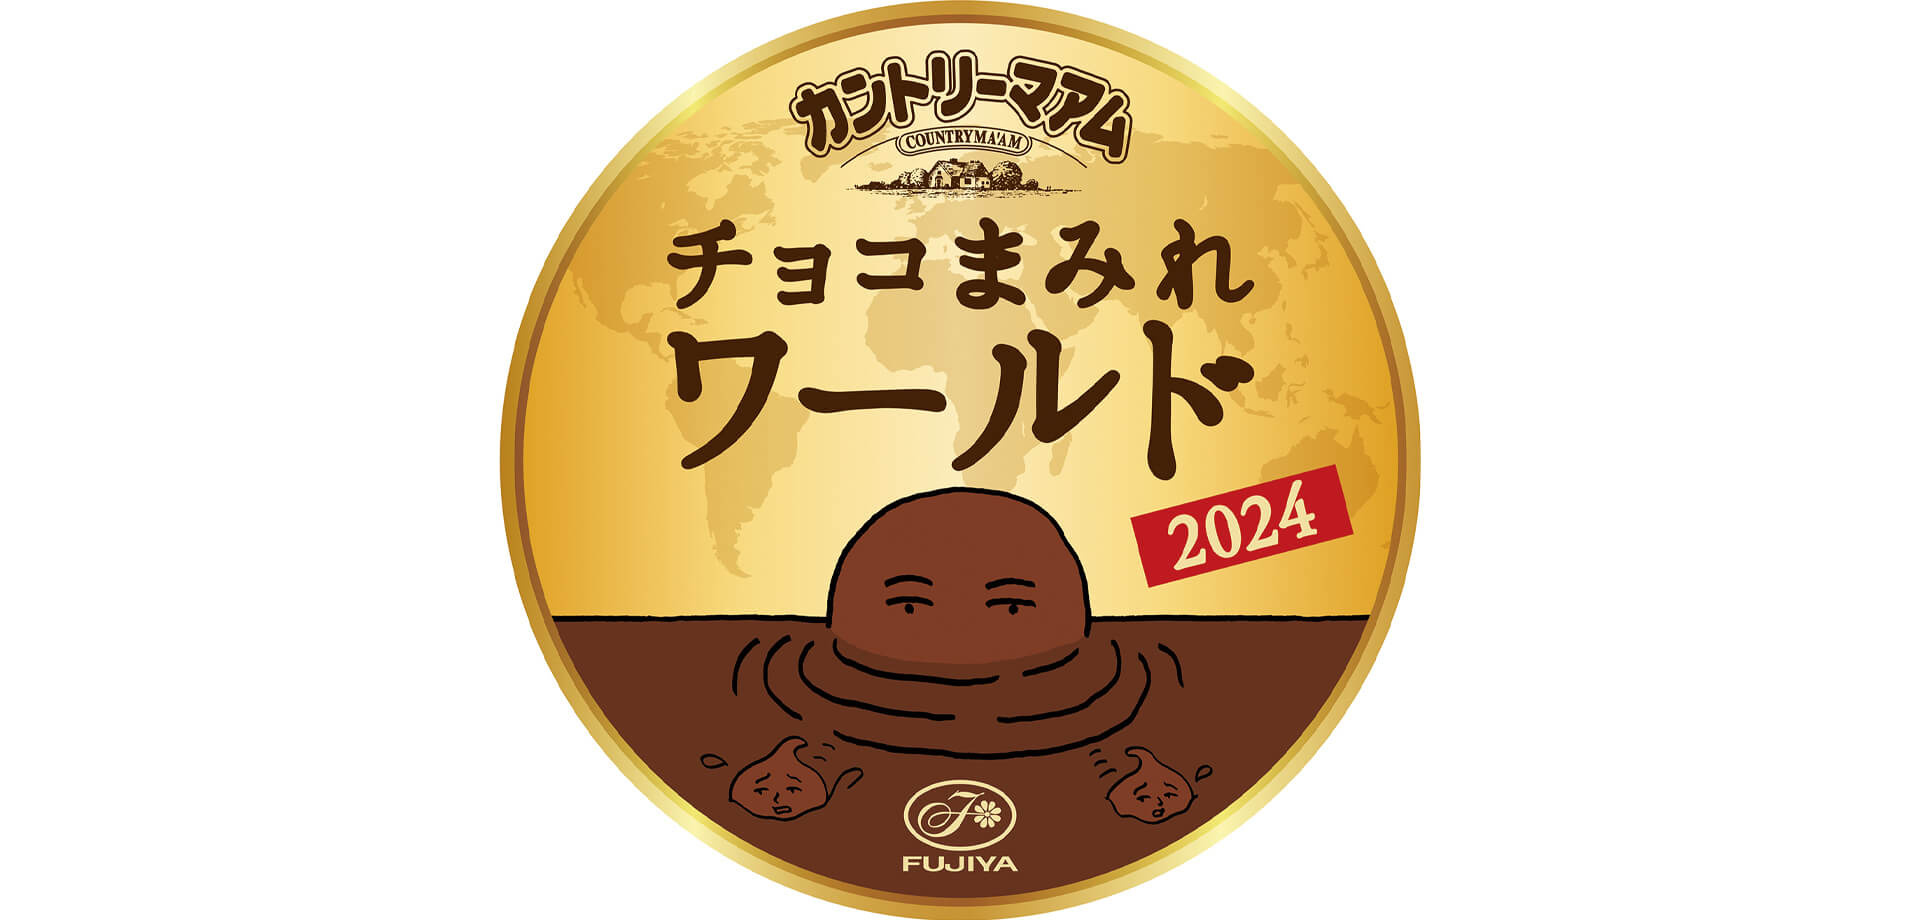 チョコまみれワールド2024 ロゴ